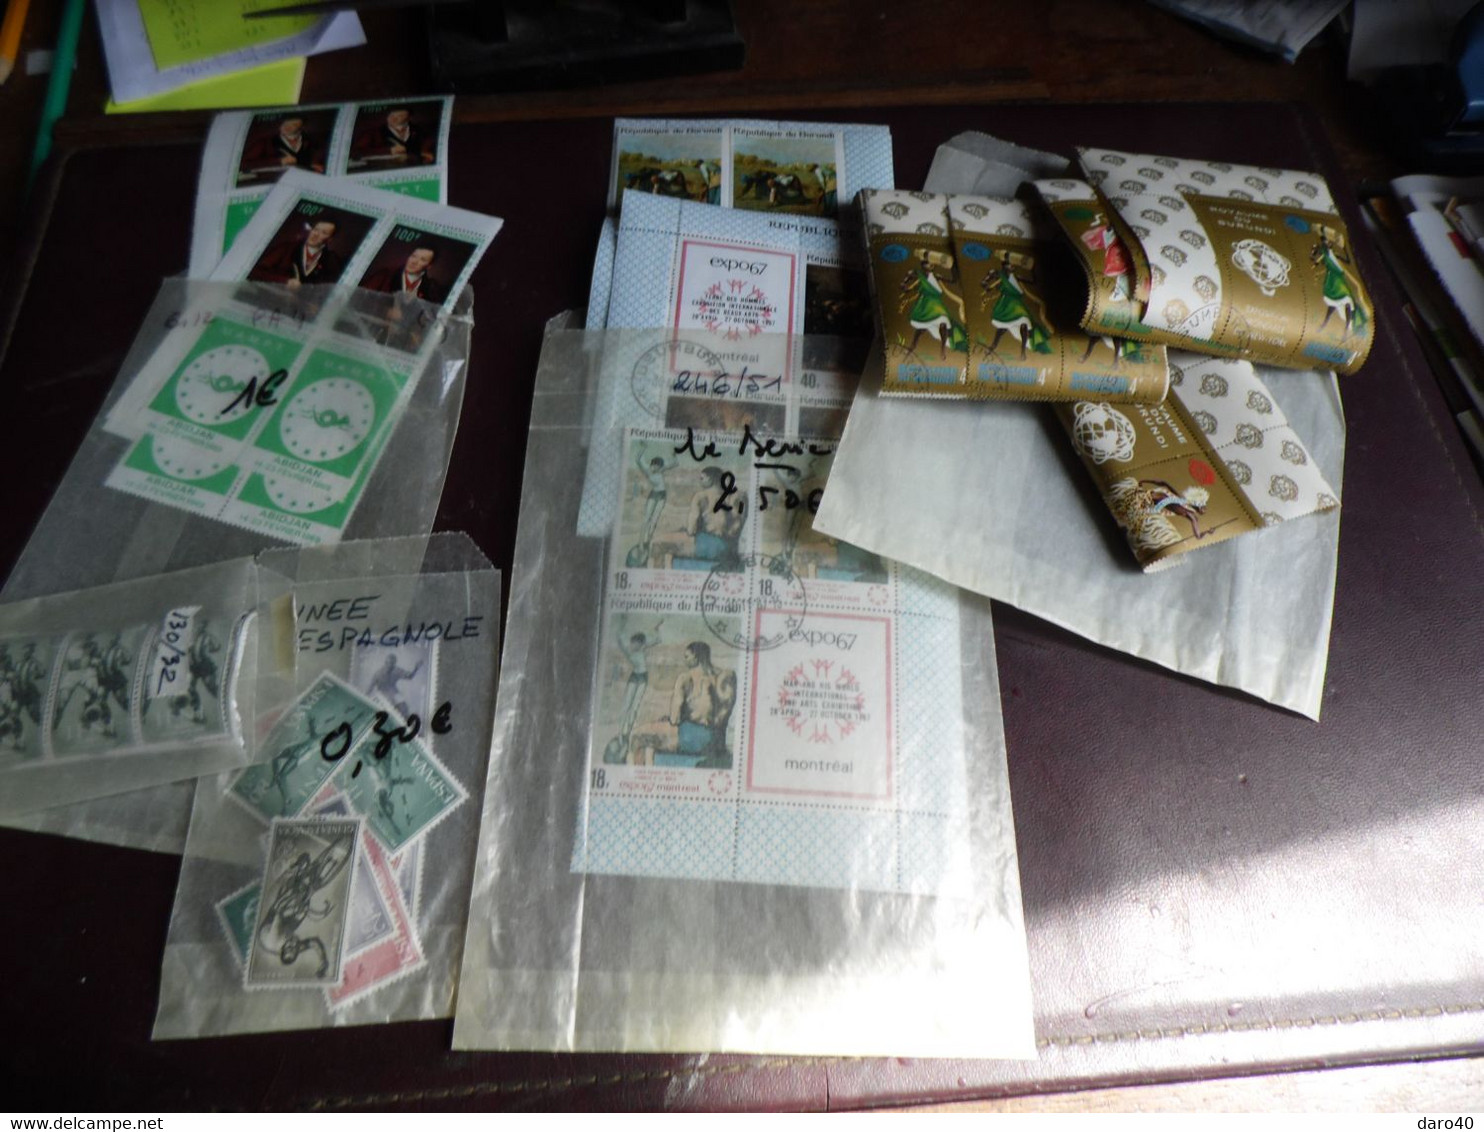 Dans un boite environ 480 TP étranger voir description Obl TB + Un lot de 45 timbres obl de Ajman